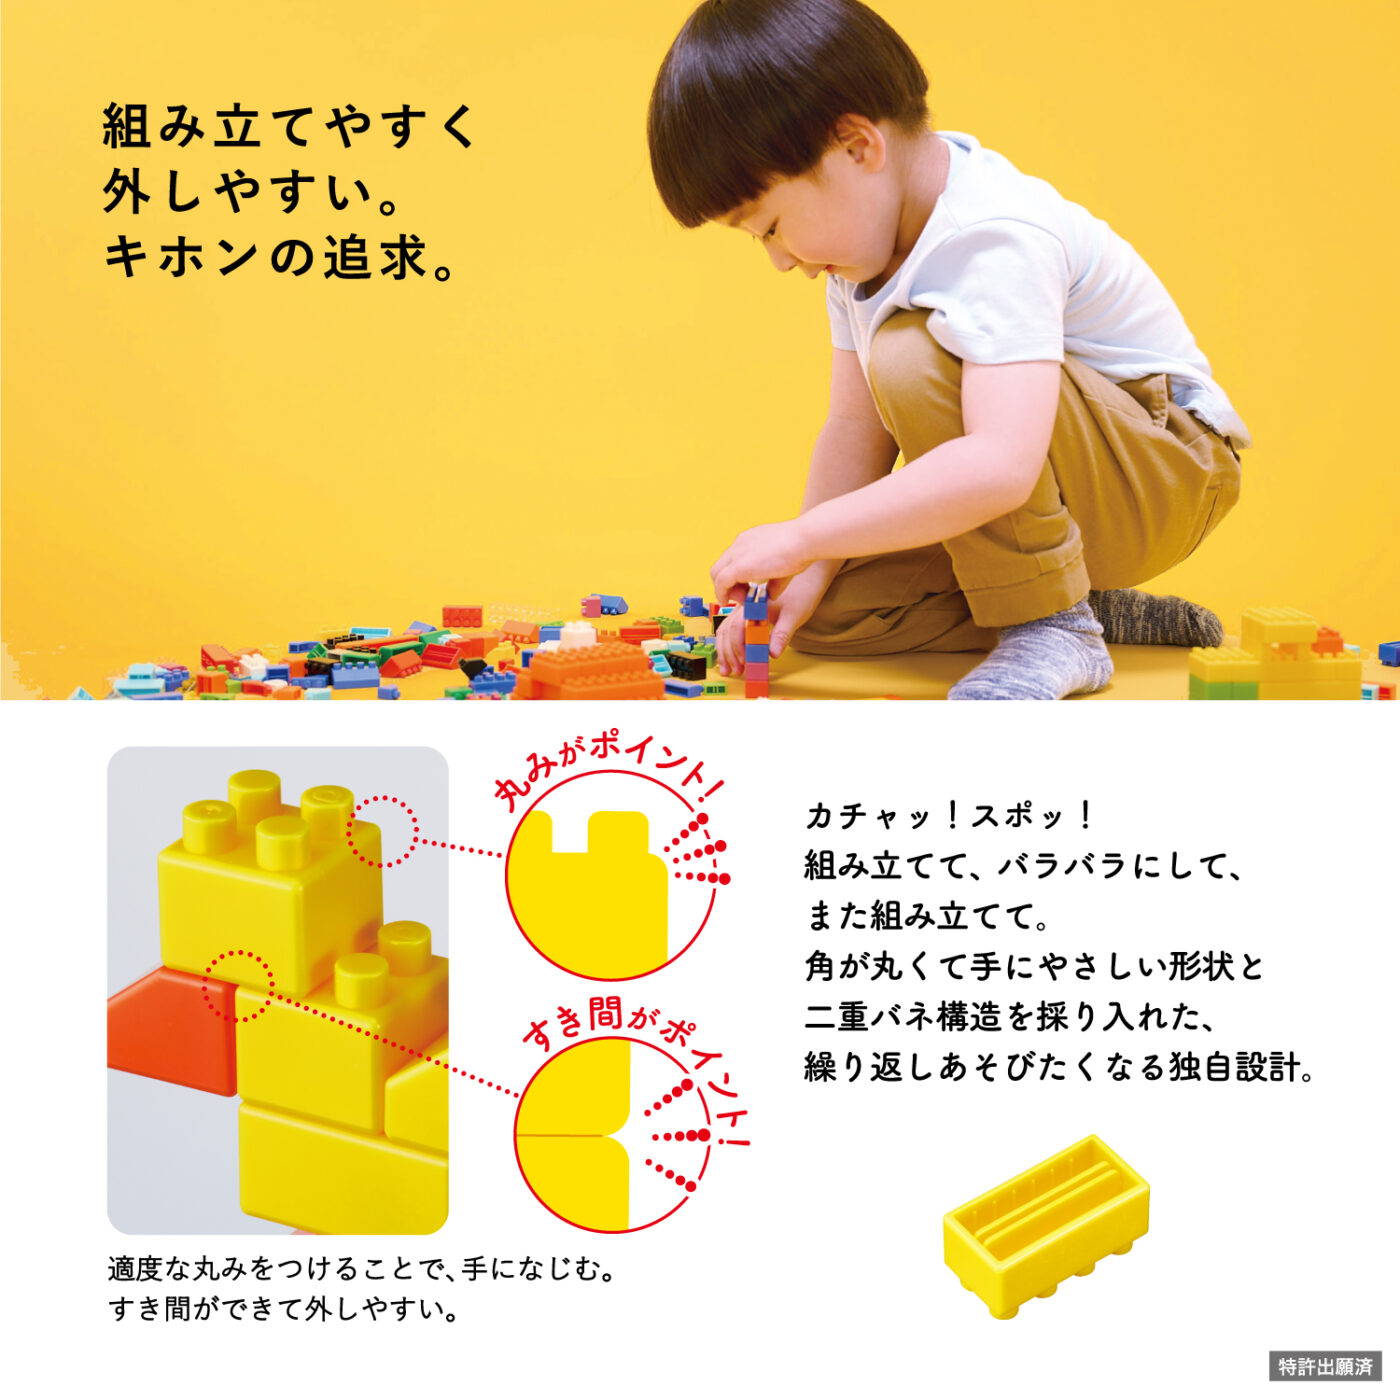 ダイヤブロック KIHONIRO(キホンイロ) Sの商品画像6